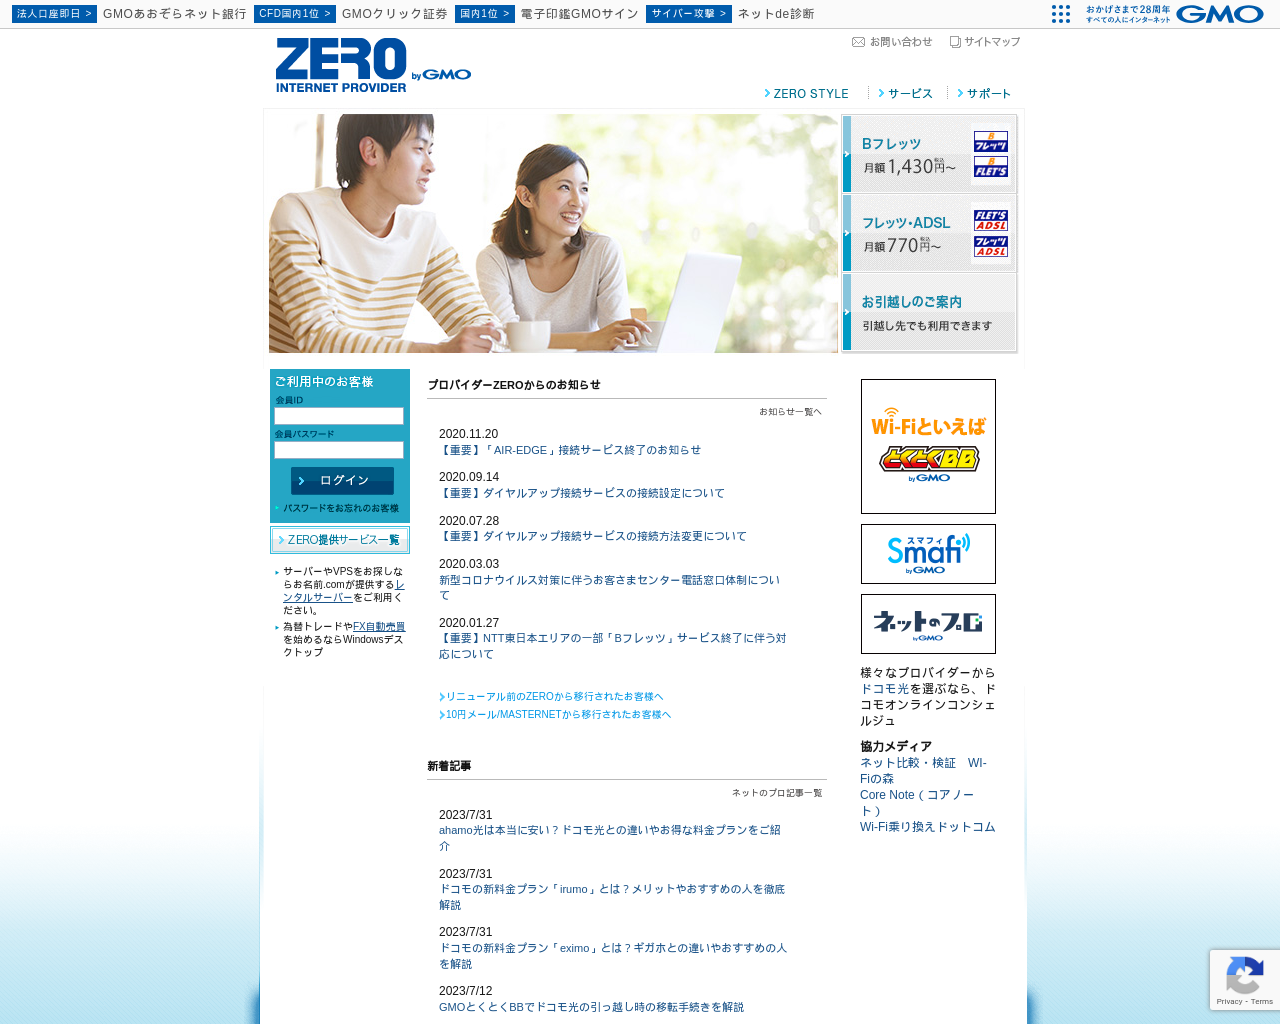 zero.jp